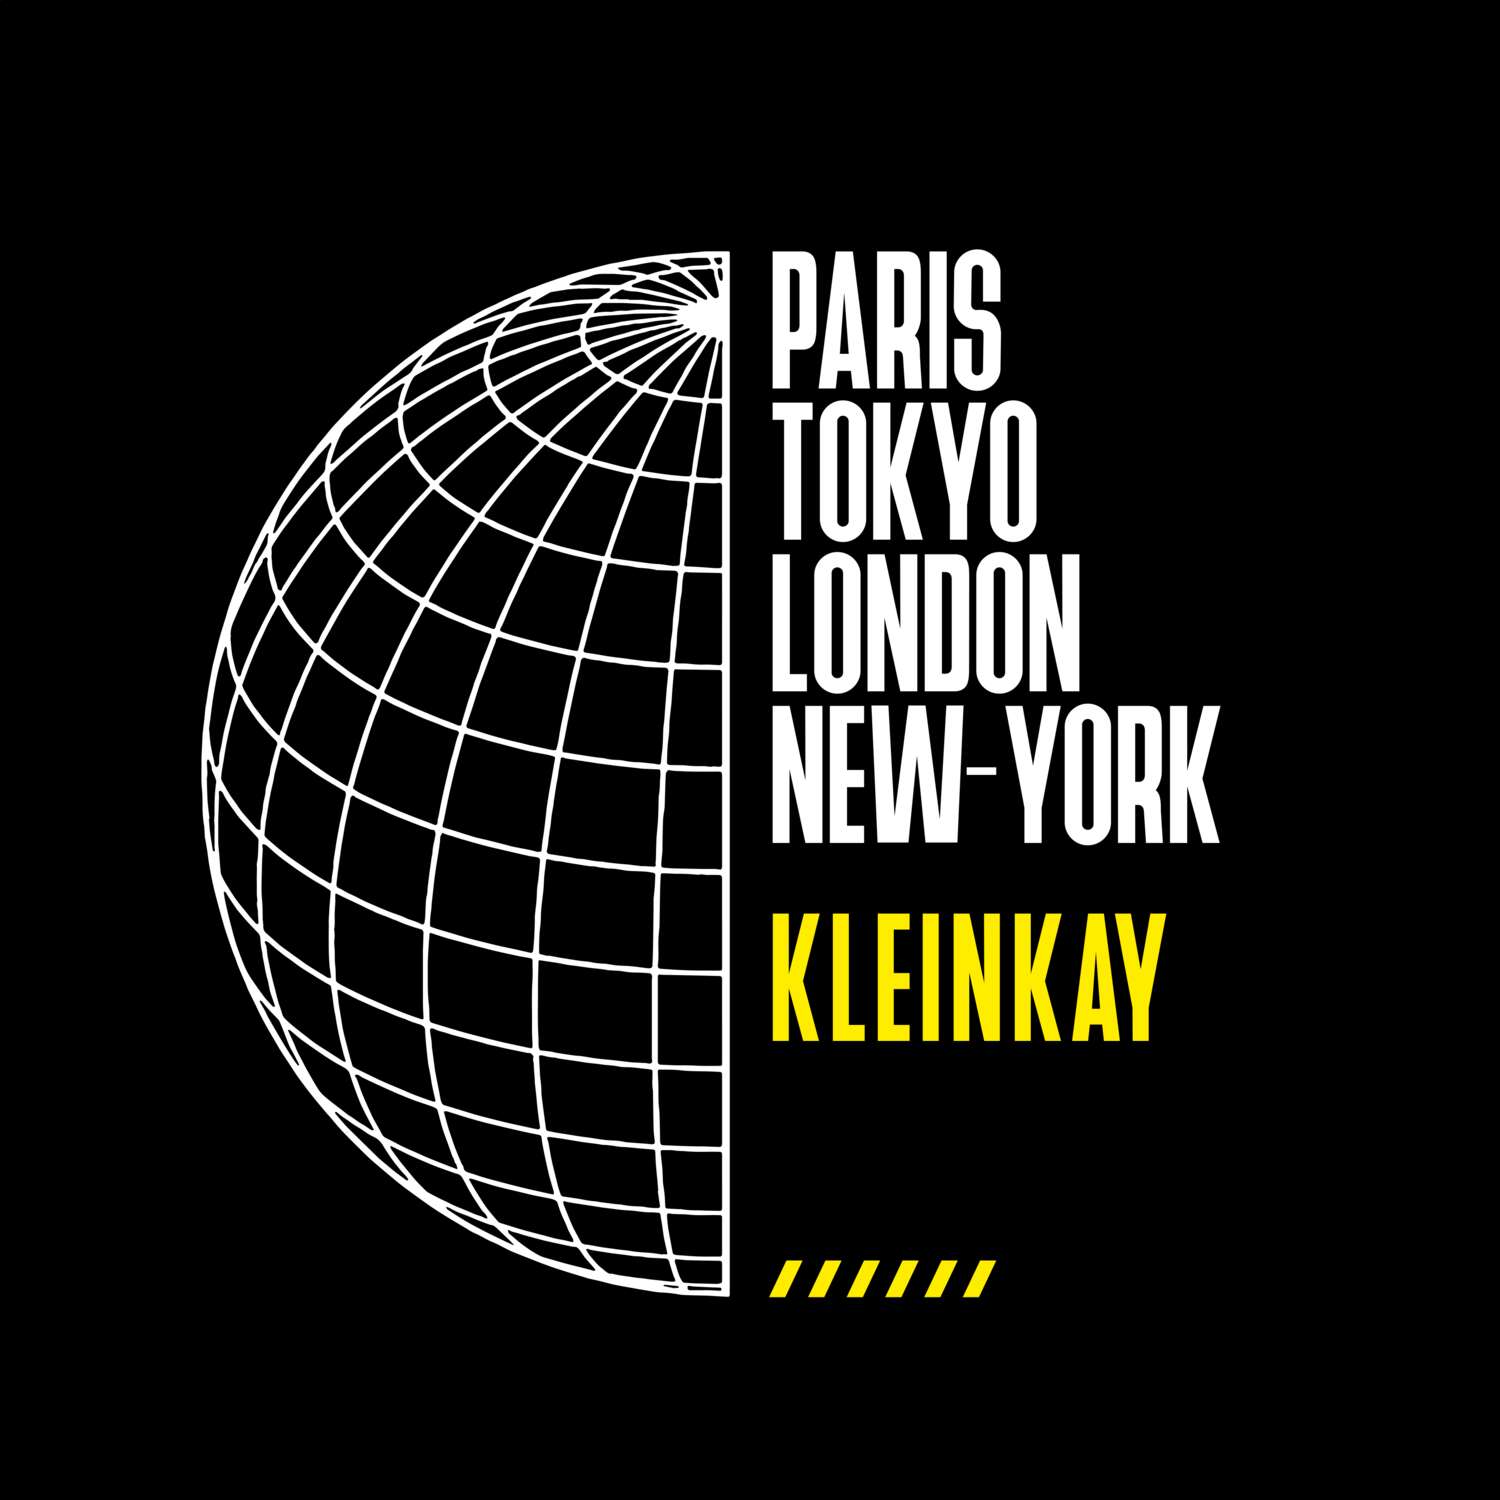 Kleinkay T-Shirt »Paris Tokyo London«